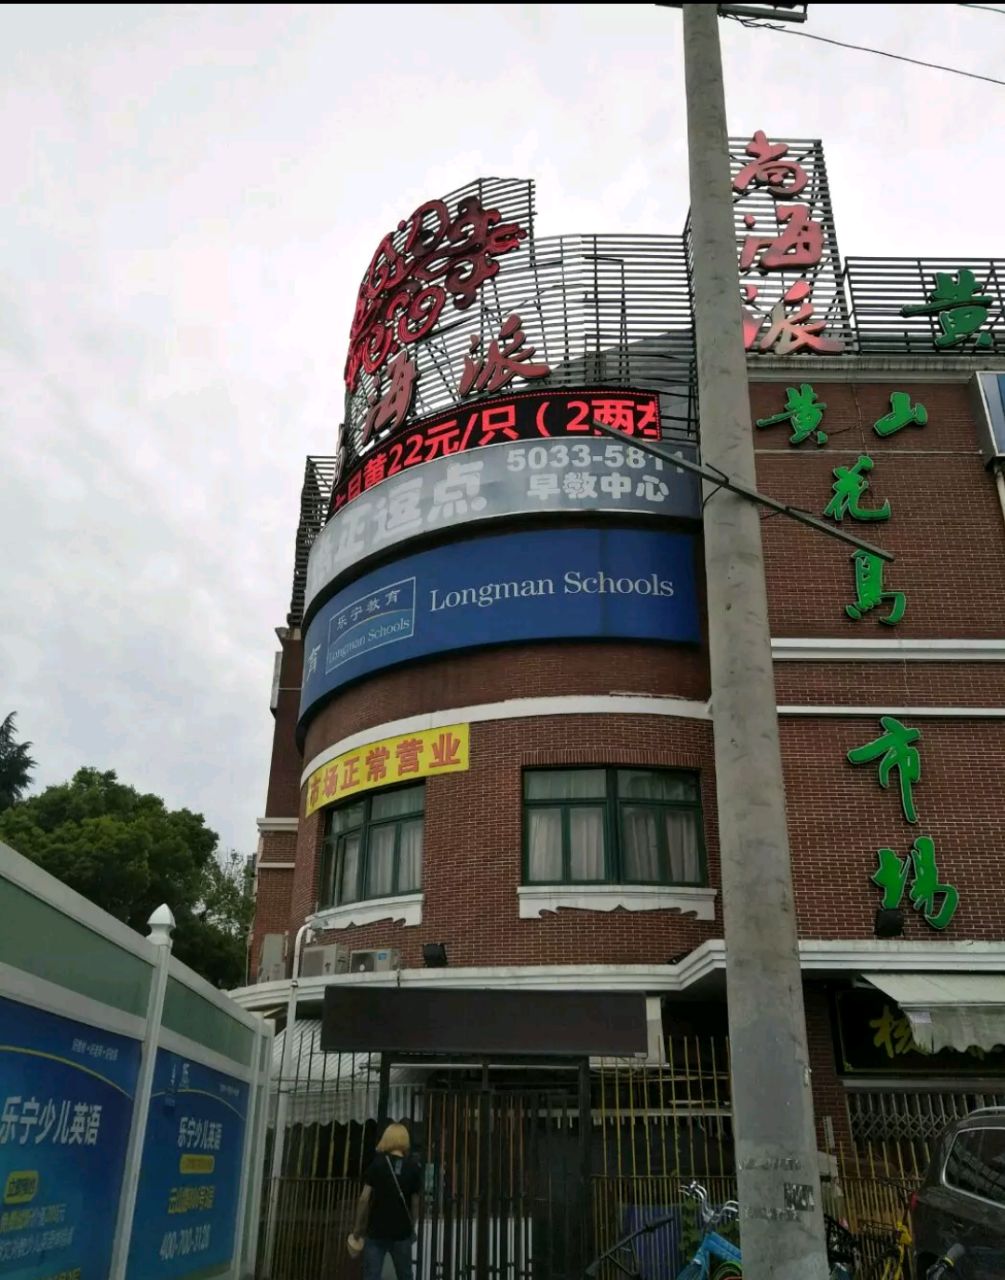 上海黄山花鸟市场图片